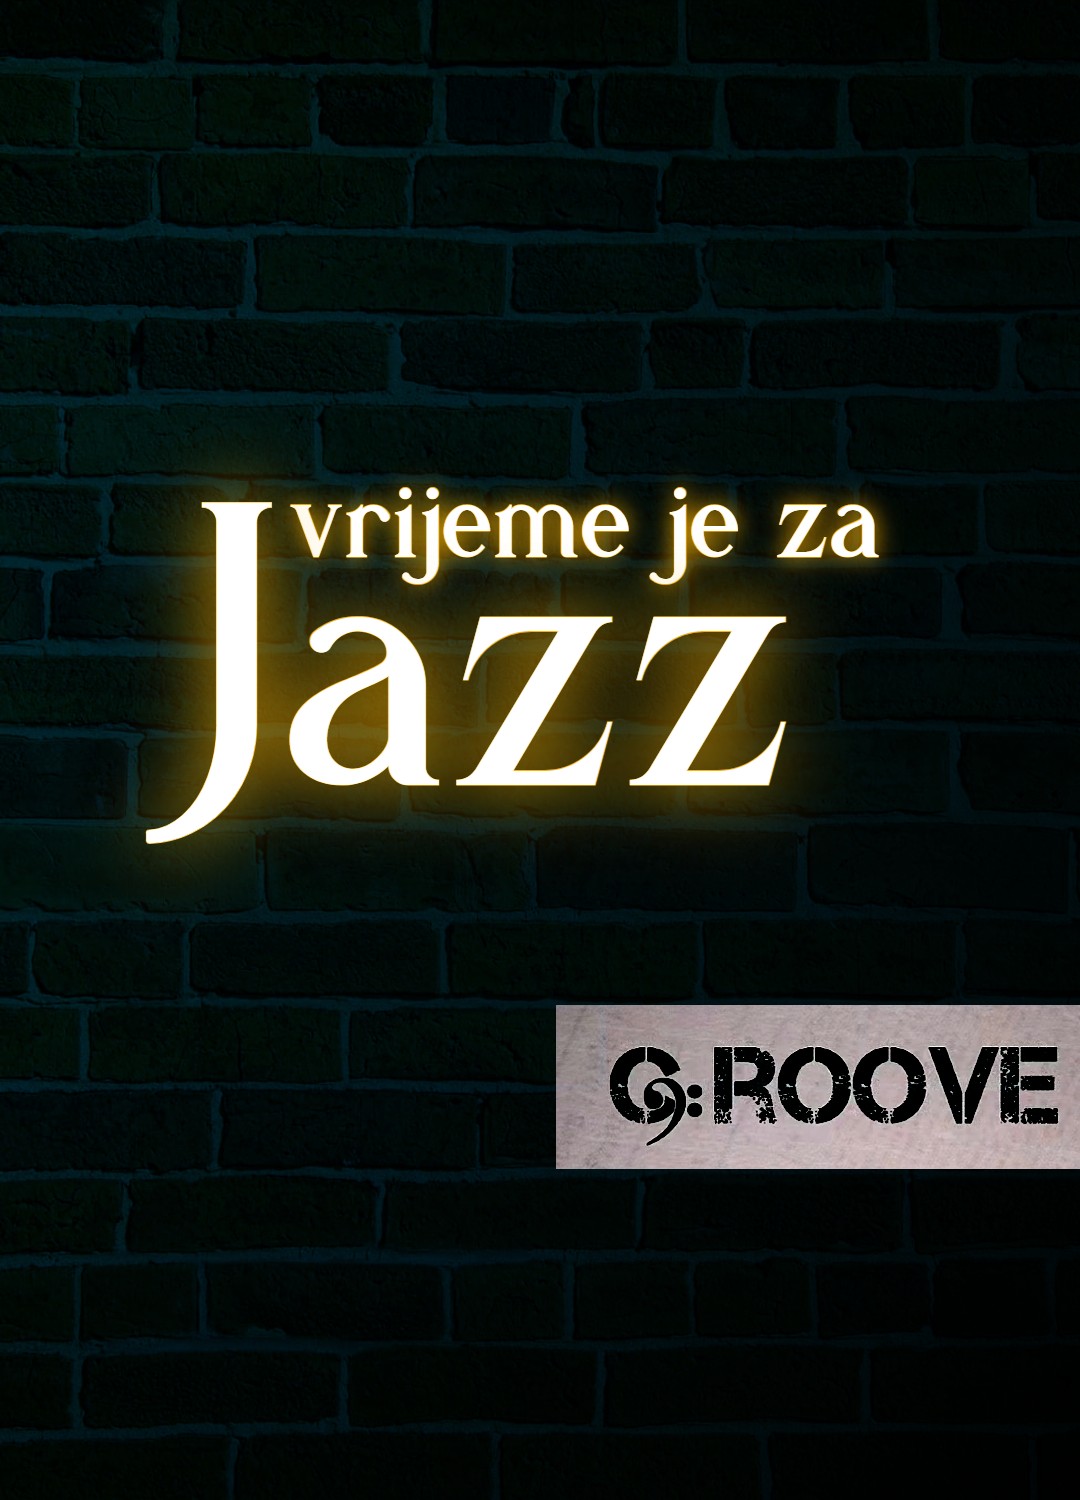 Vrijeme je za jazz Groove bar